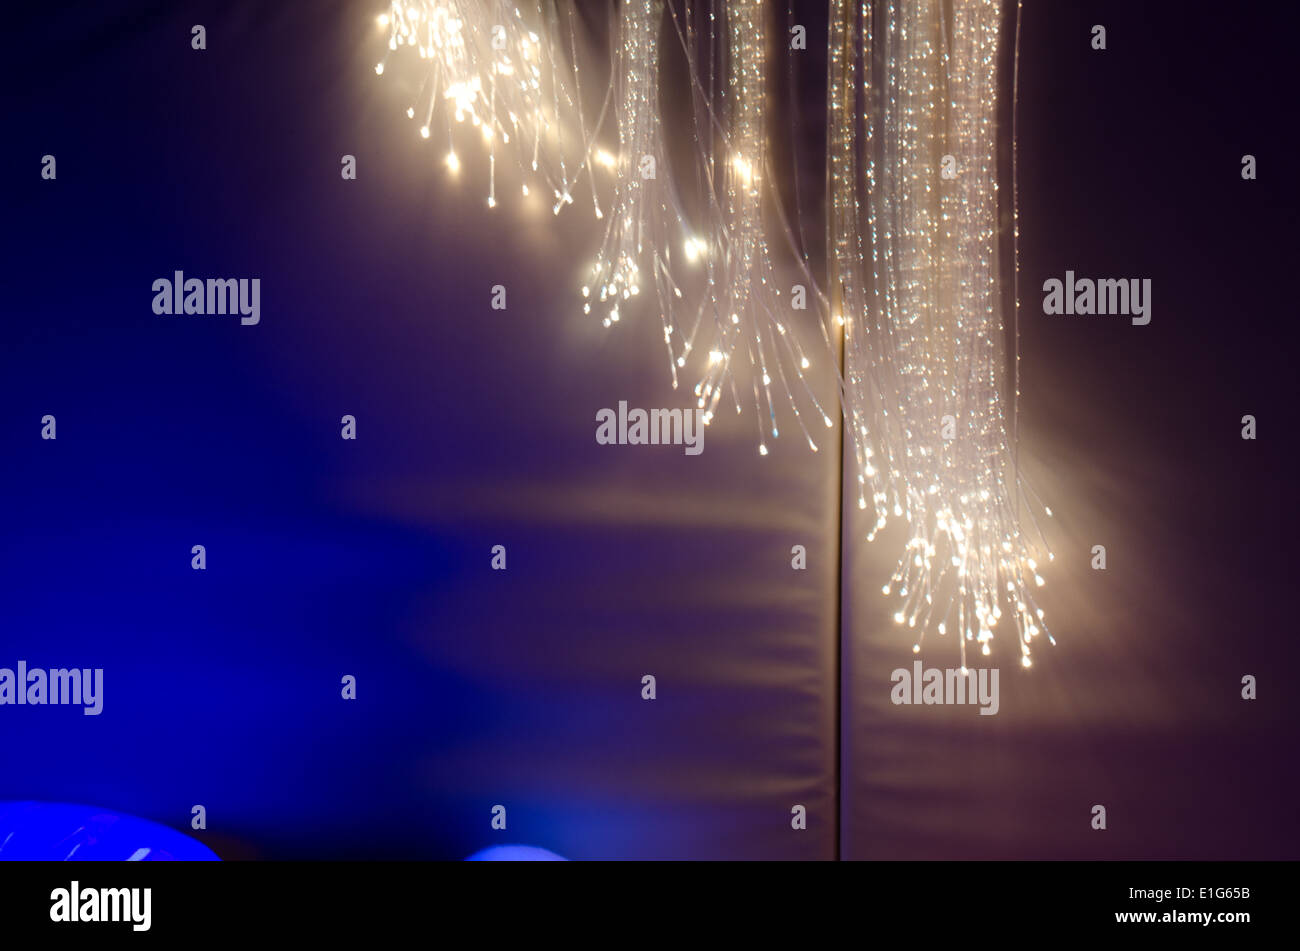 Faseroptische Beleuchtung in einer Behinderung Nächstenliebe Snoezelenraum  dunkel UV Beleuchtung Stockfotografie - Alamy